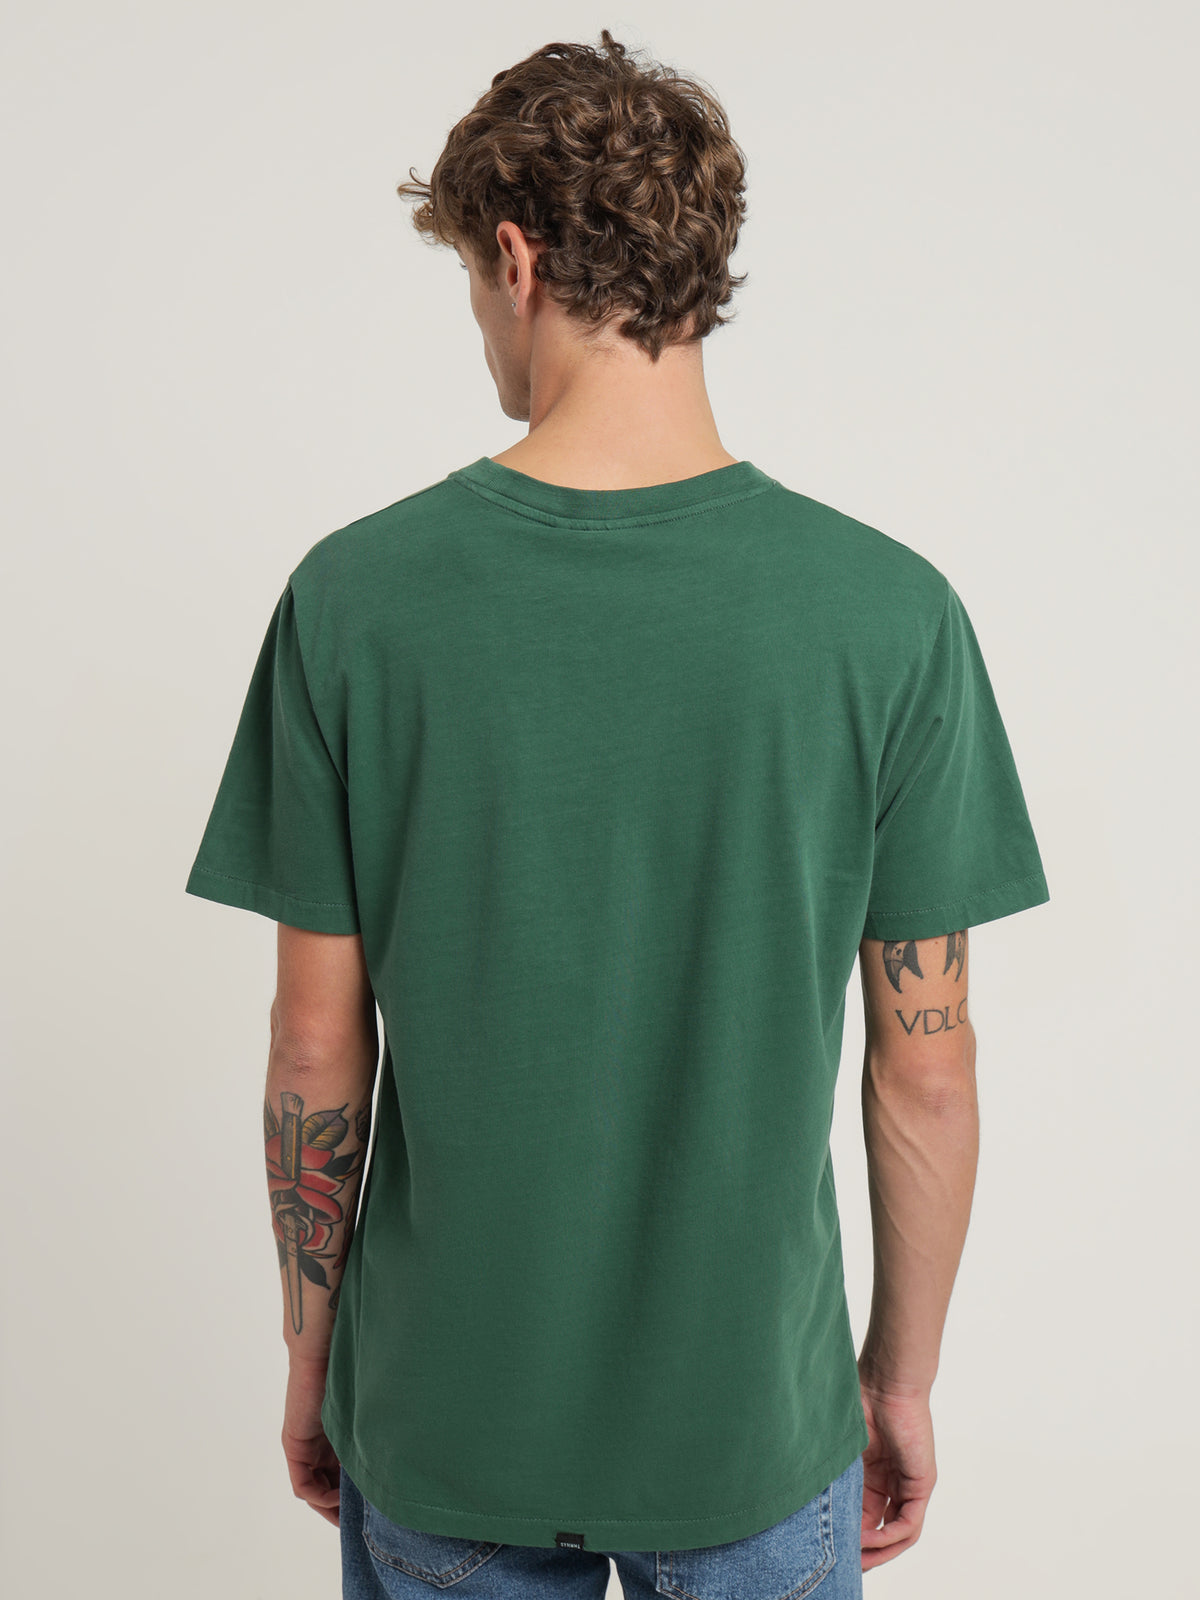 Minimal Thrills Merch Fit T-Shirt in Mallard Green